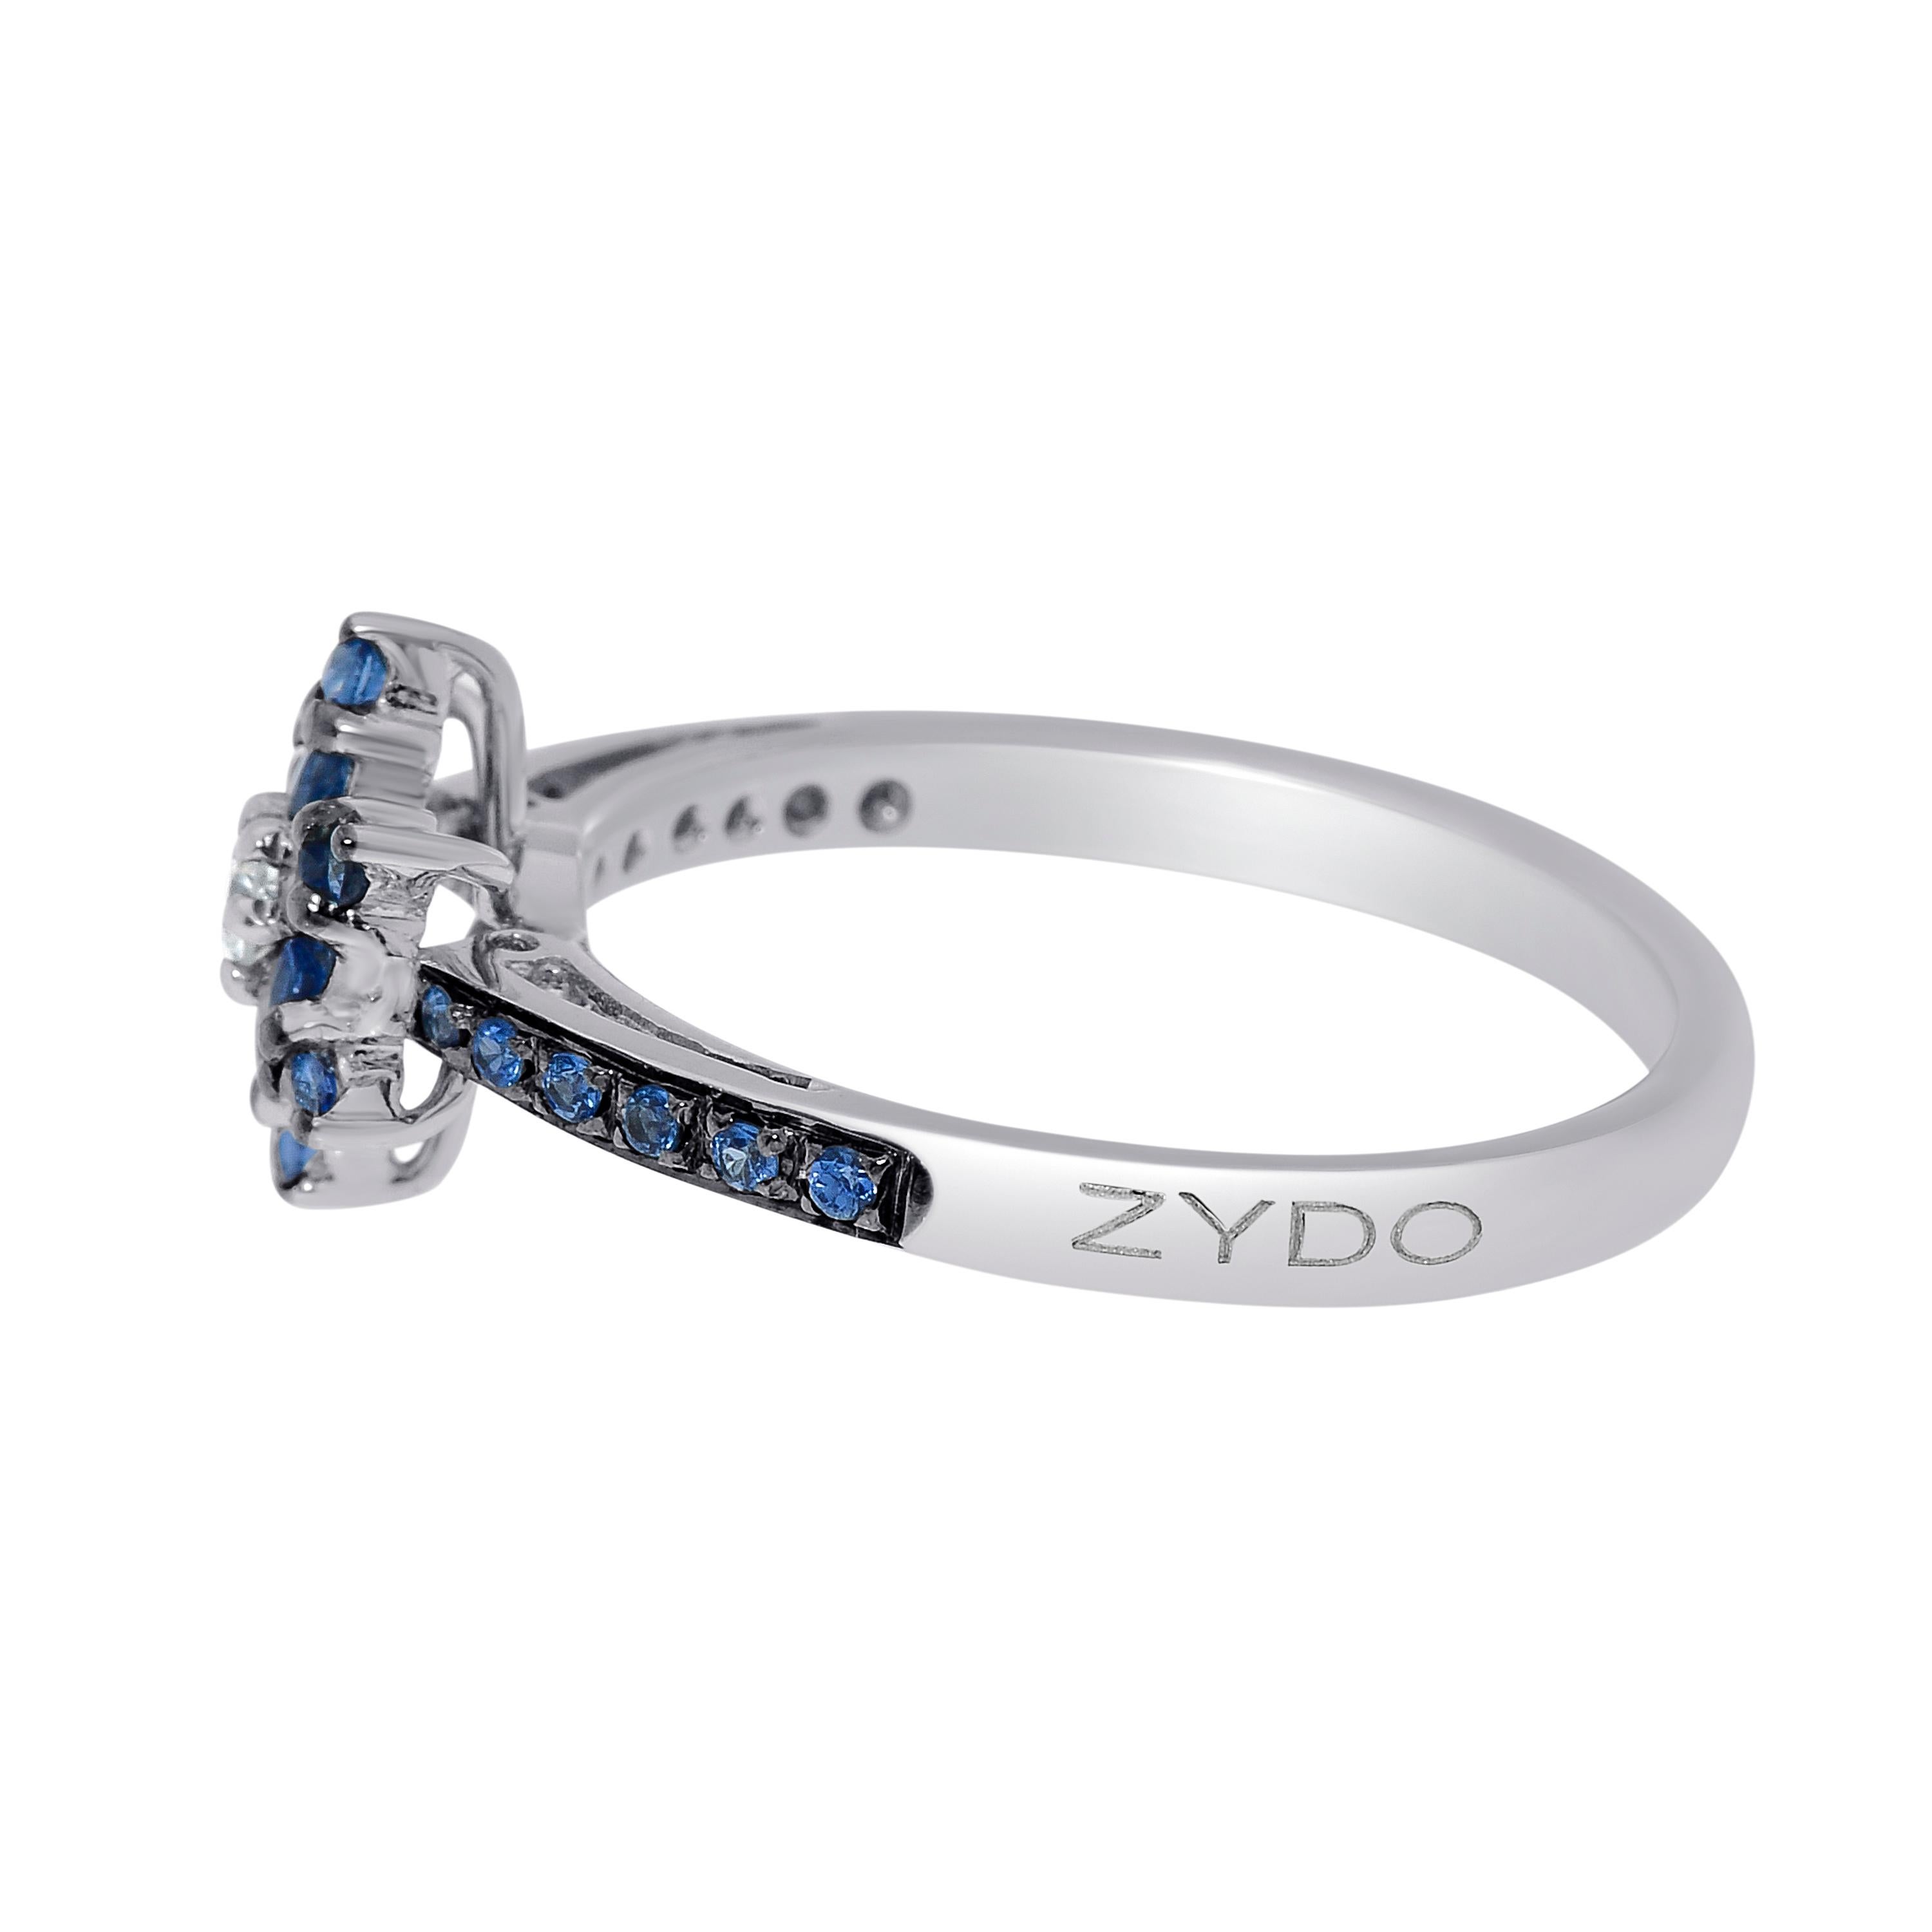 Contemporain Bague Zydo en or blanc 18 carats, saphirs et diamants, taille 7 en vente